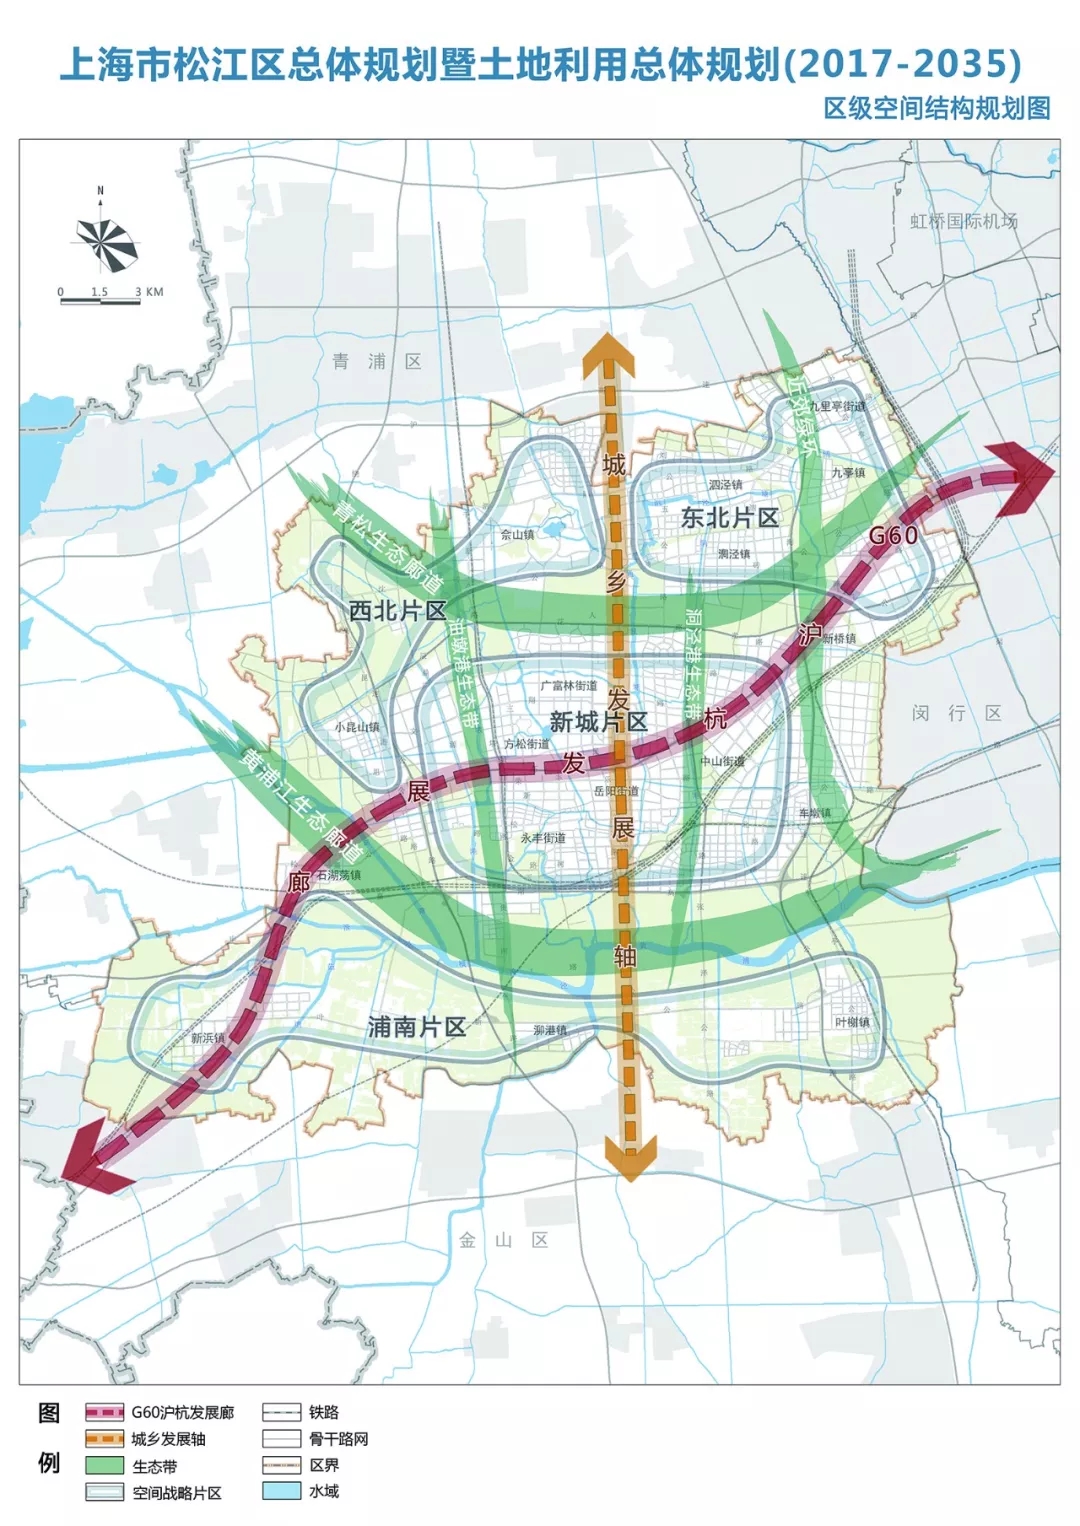 上图来源于《上海市松江区总体规划暨土地利用总体规划(2017